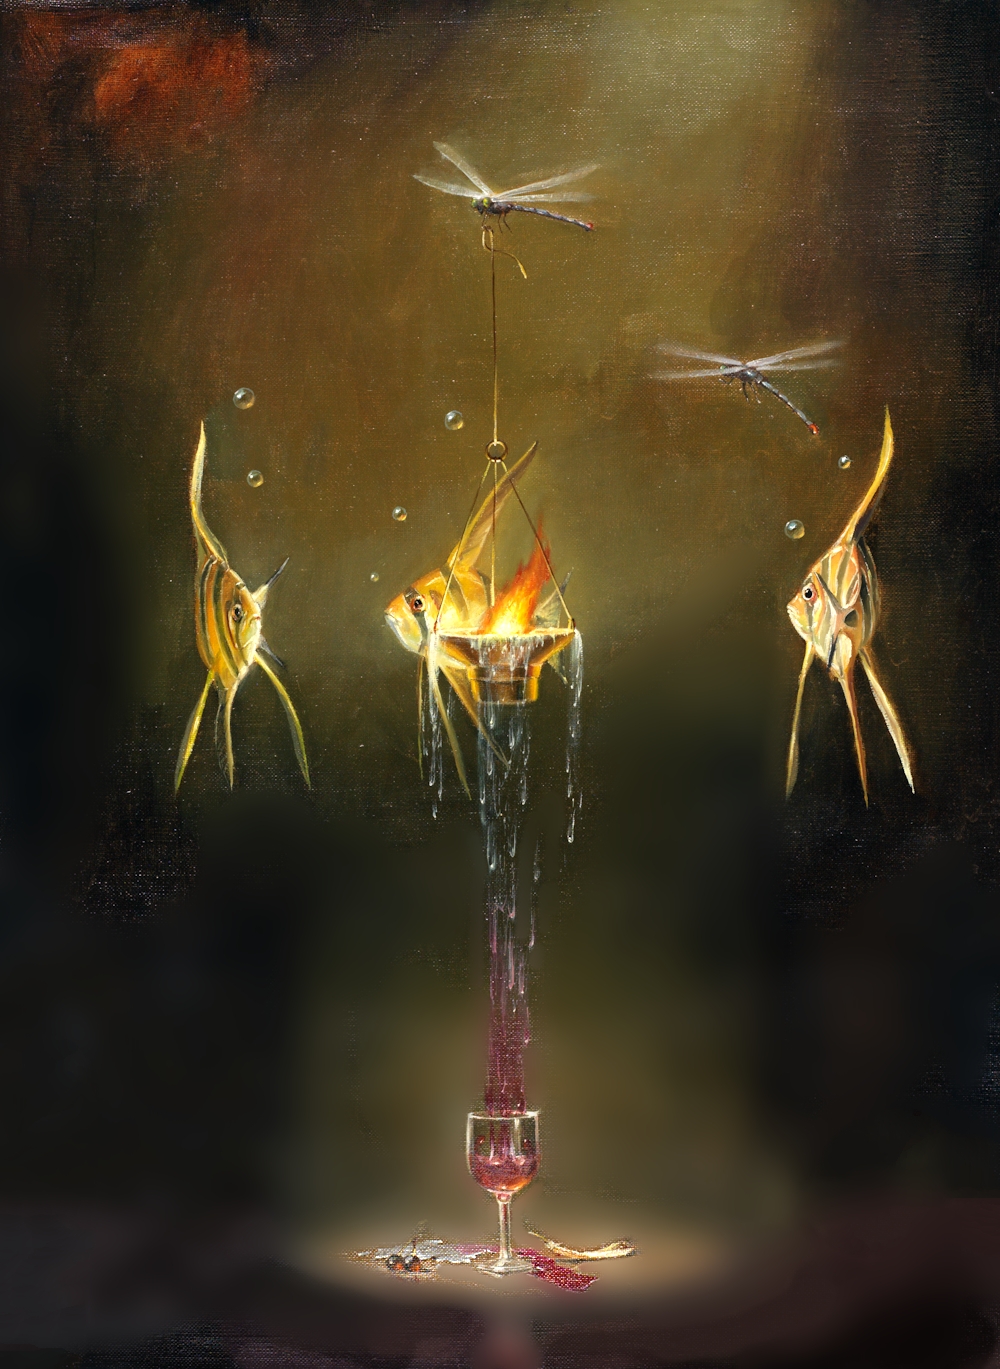 Ascensions Fire
Original Oil on Canvas by Glen Tarnowski